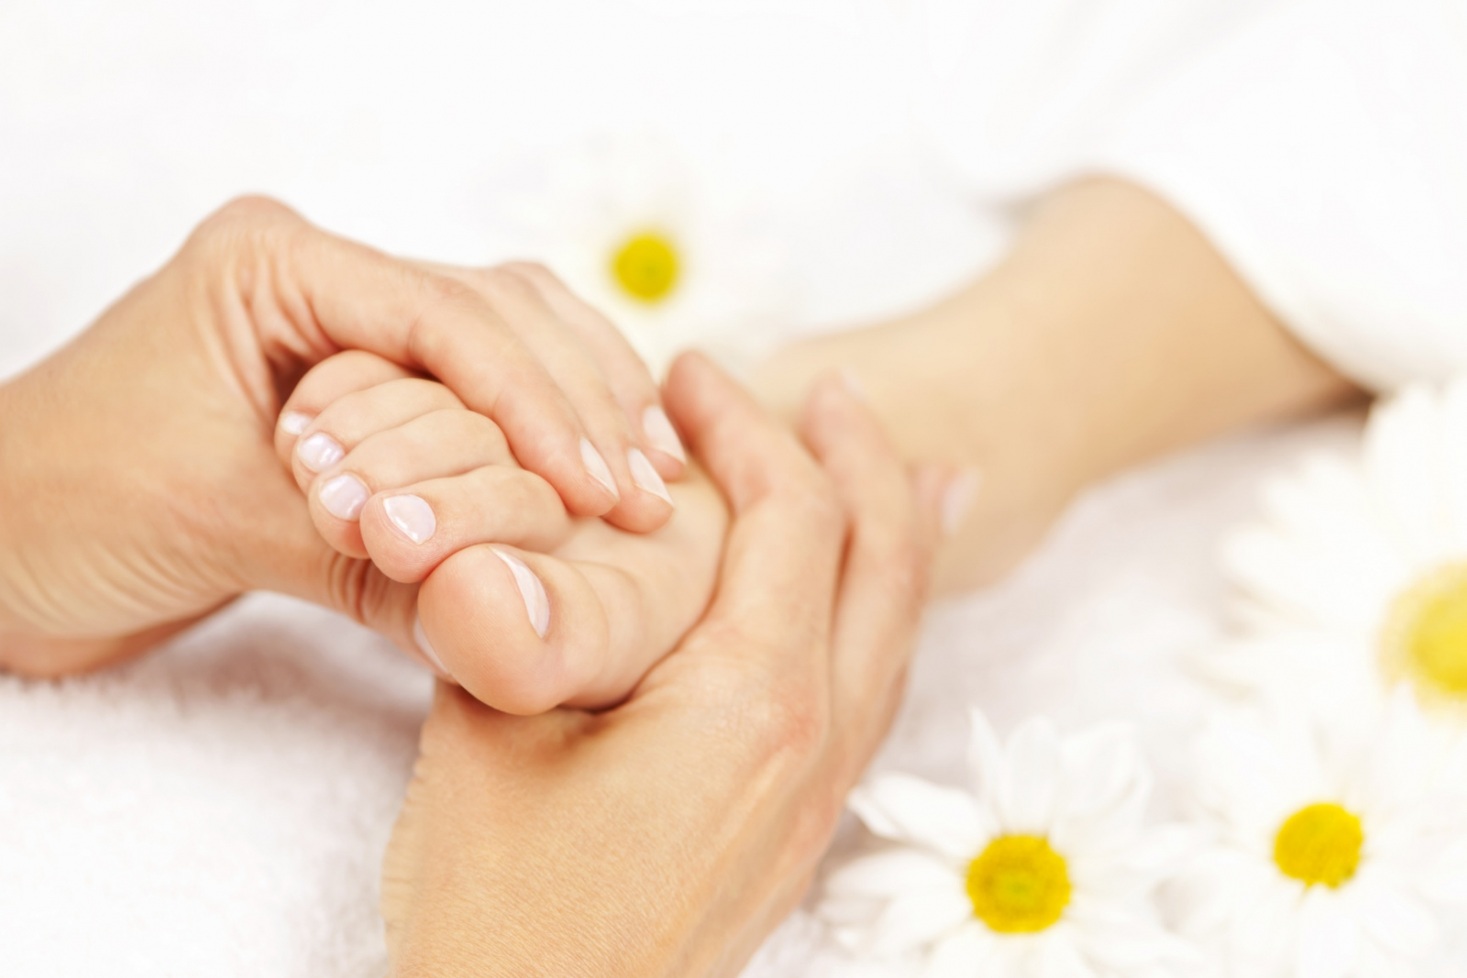 Bấm huyệt chân: Giảm đau và cải thiện sức khỏe - Ảnh 1